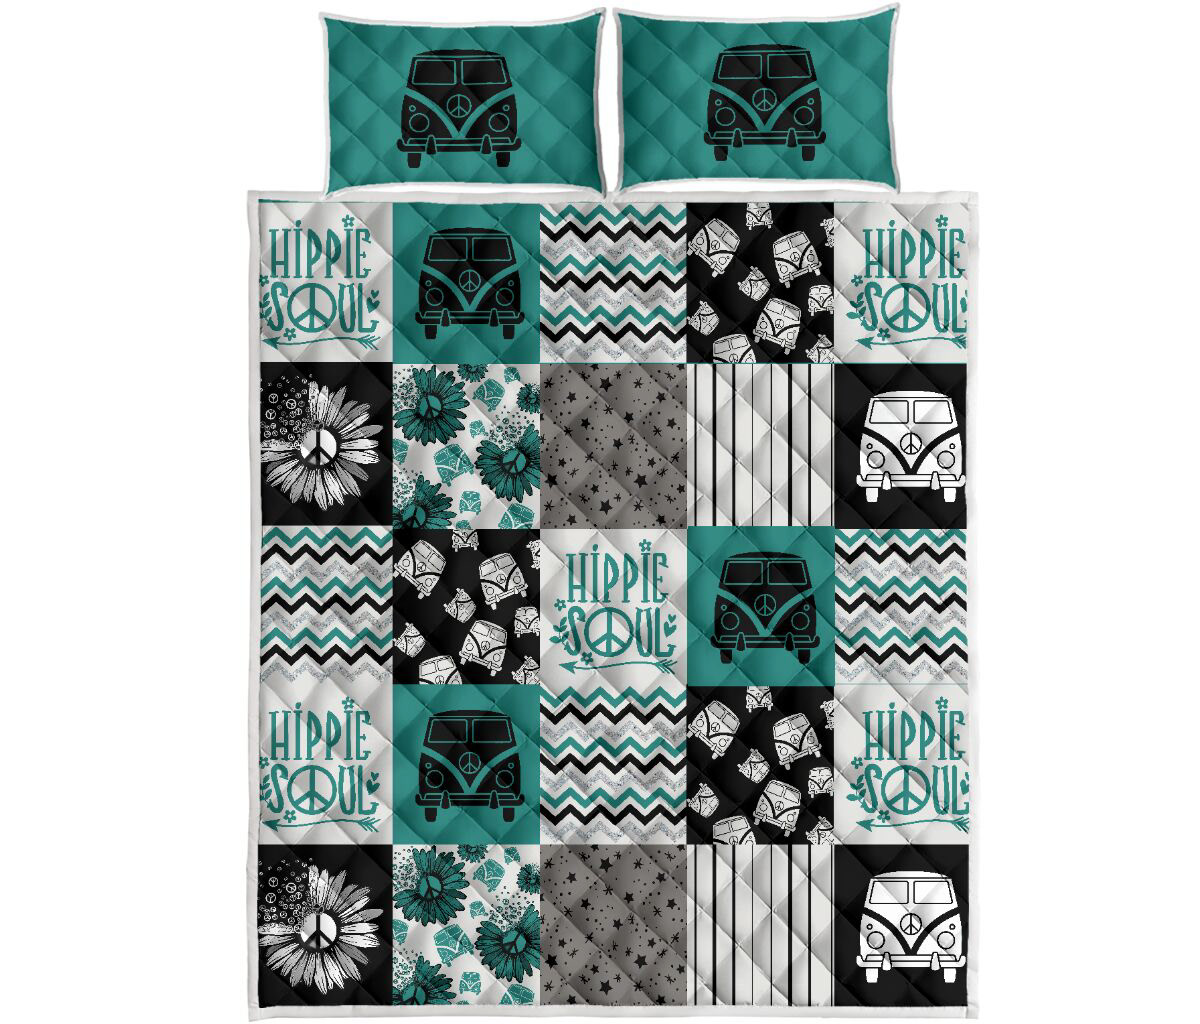 Prind on demand quilt Tote Bag mug design quilt design typography   tumbler design